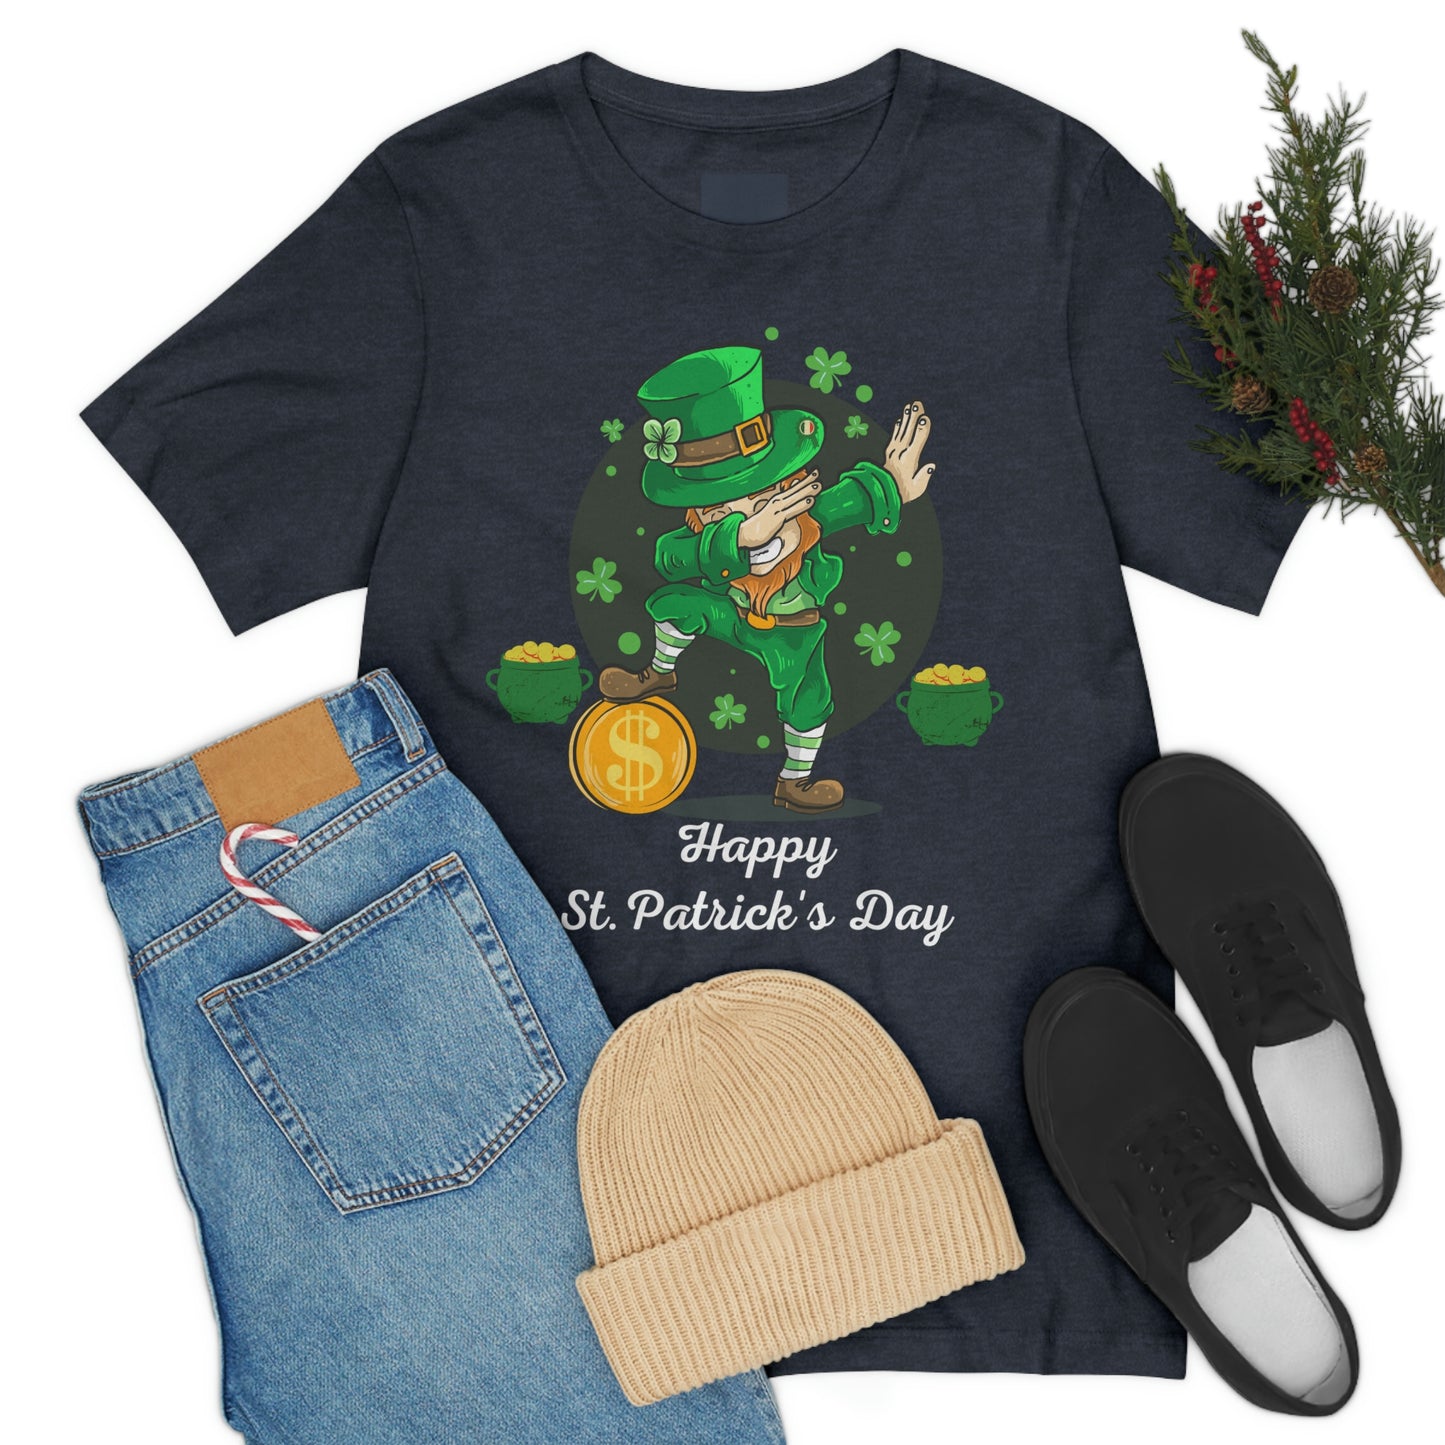 Happy St Patrick's Day shirt luck of the Irish shirt - Shamrock shirt